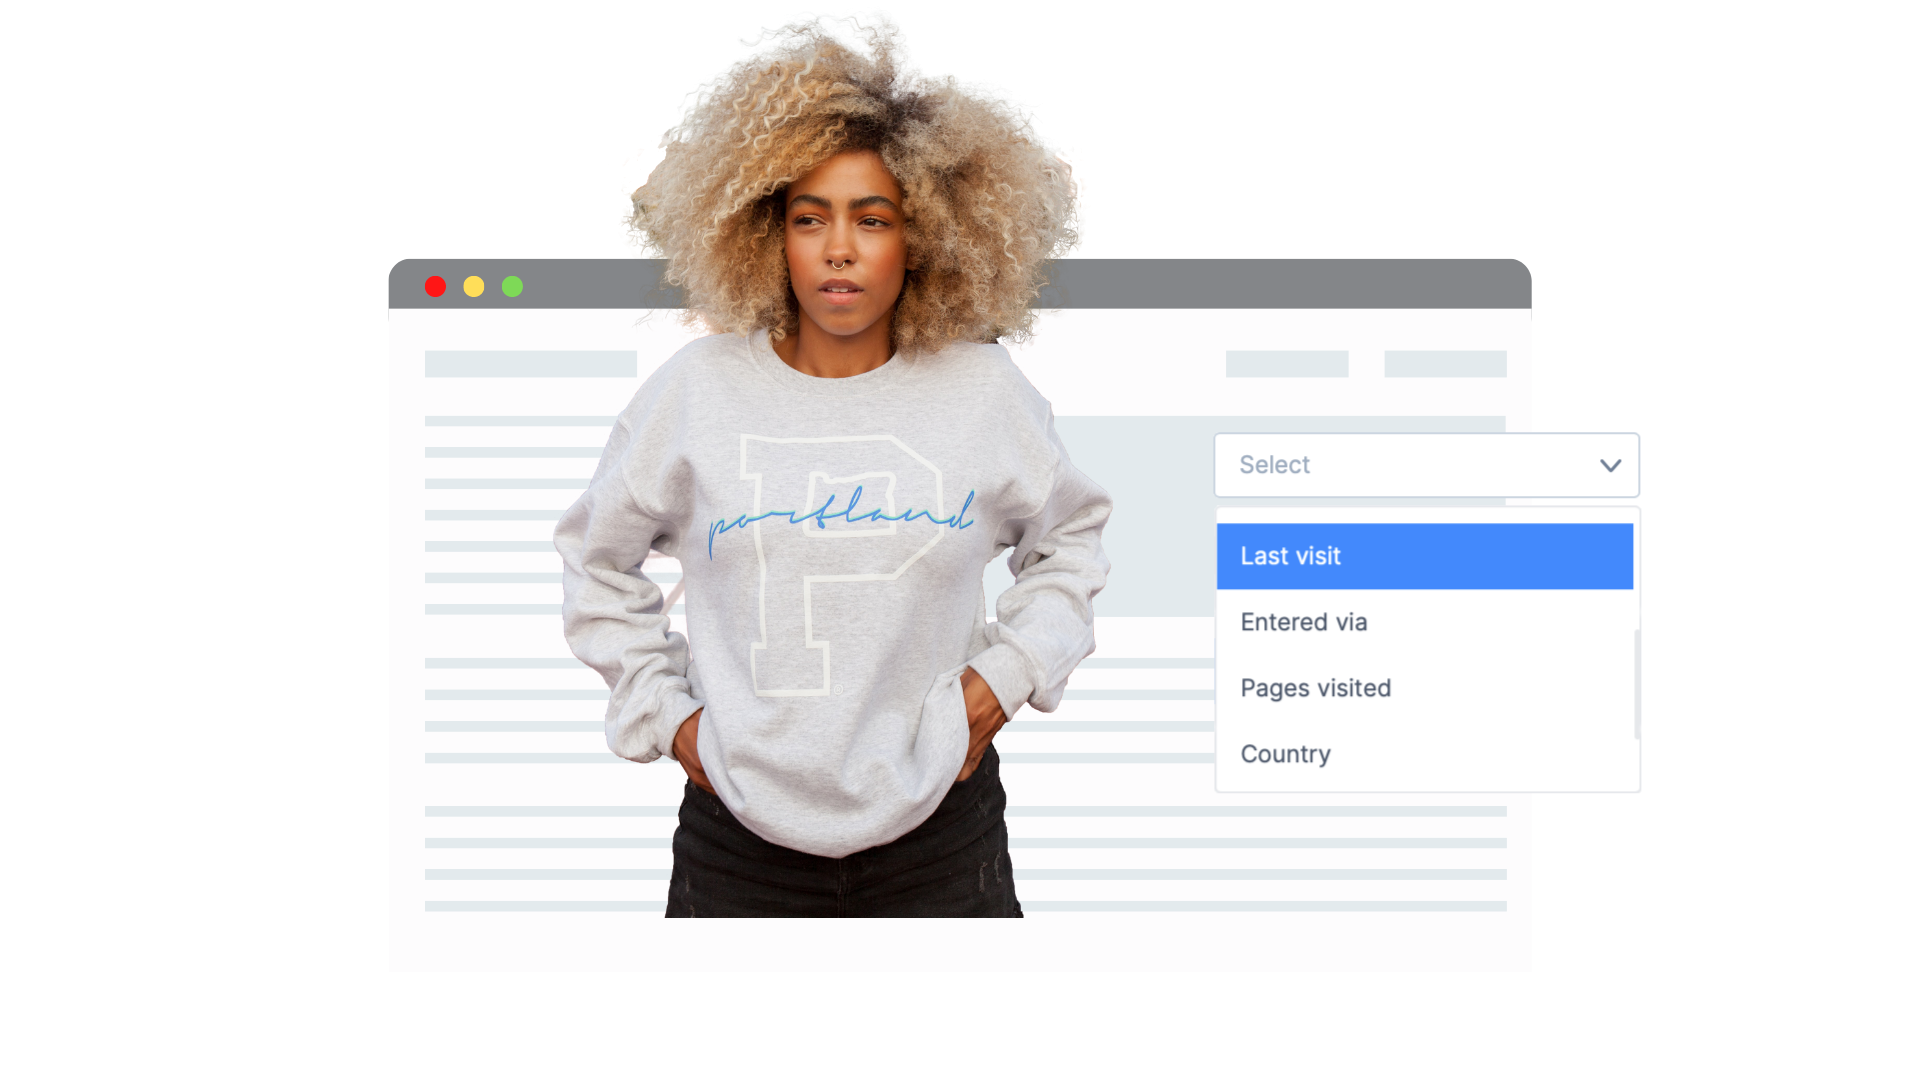  Woman in font of website with her website behavior